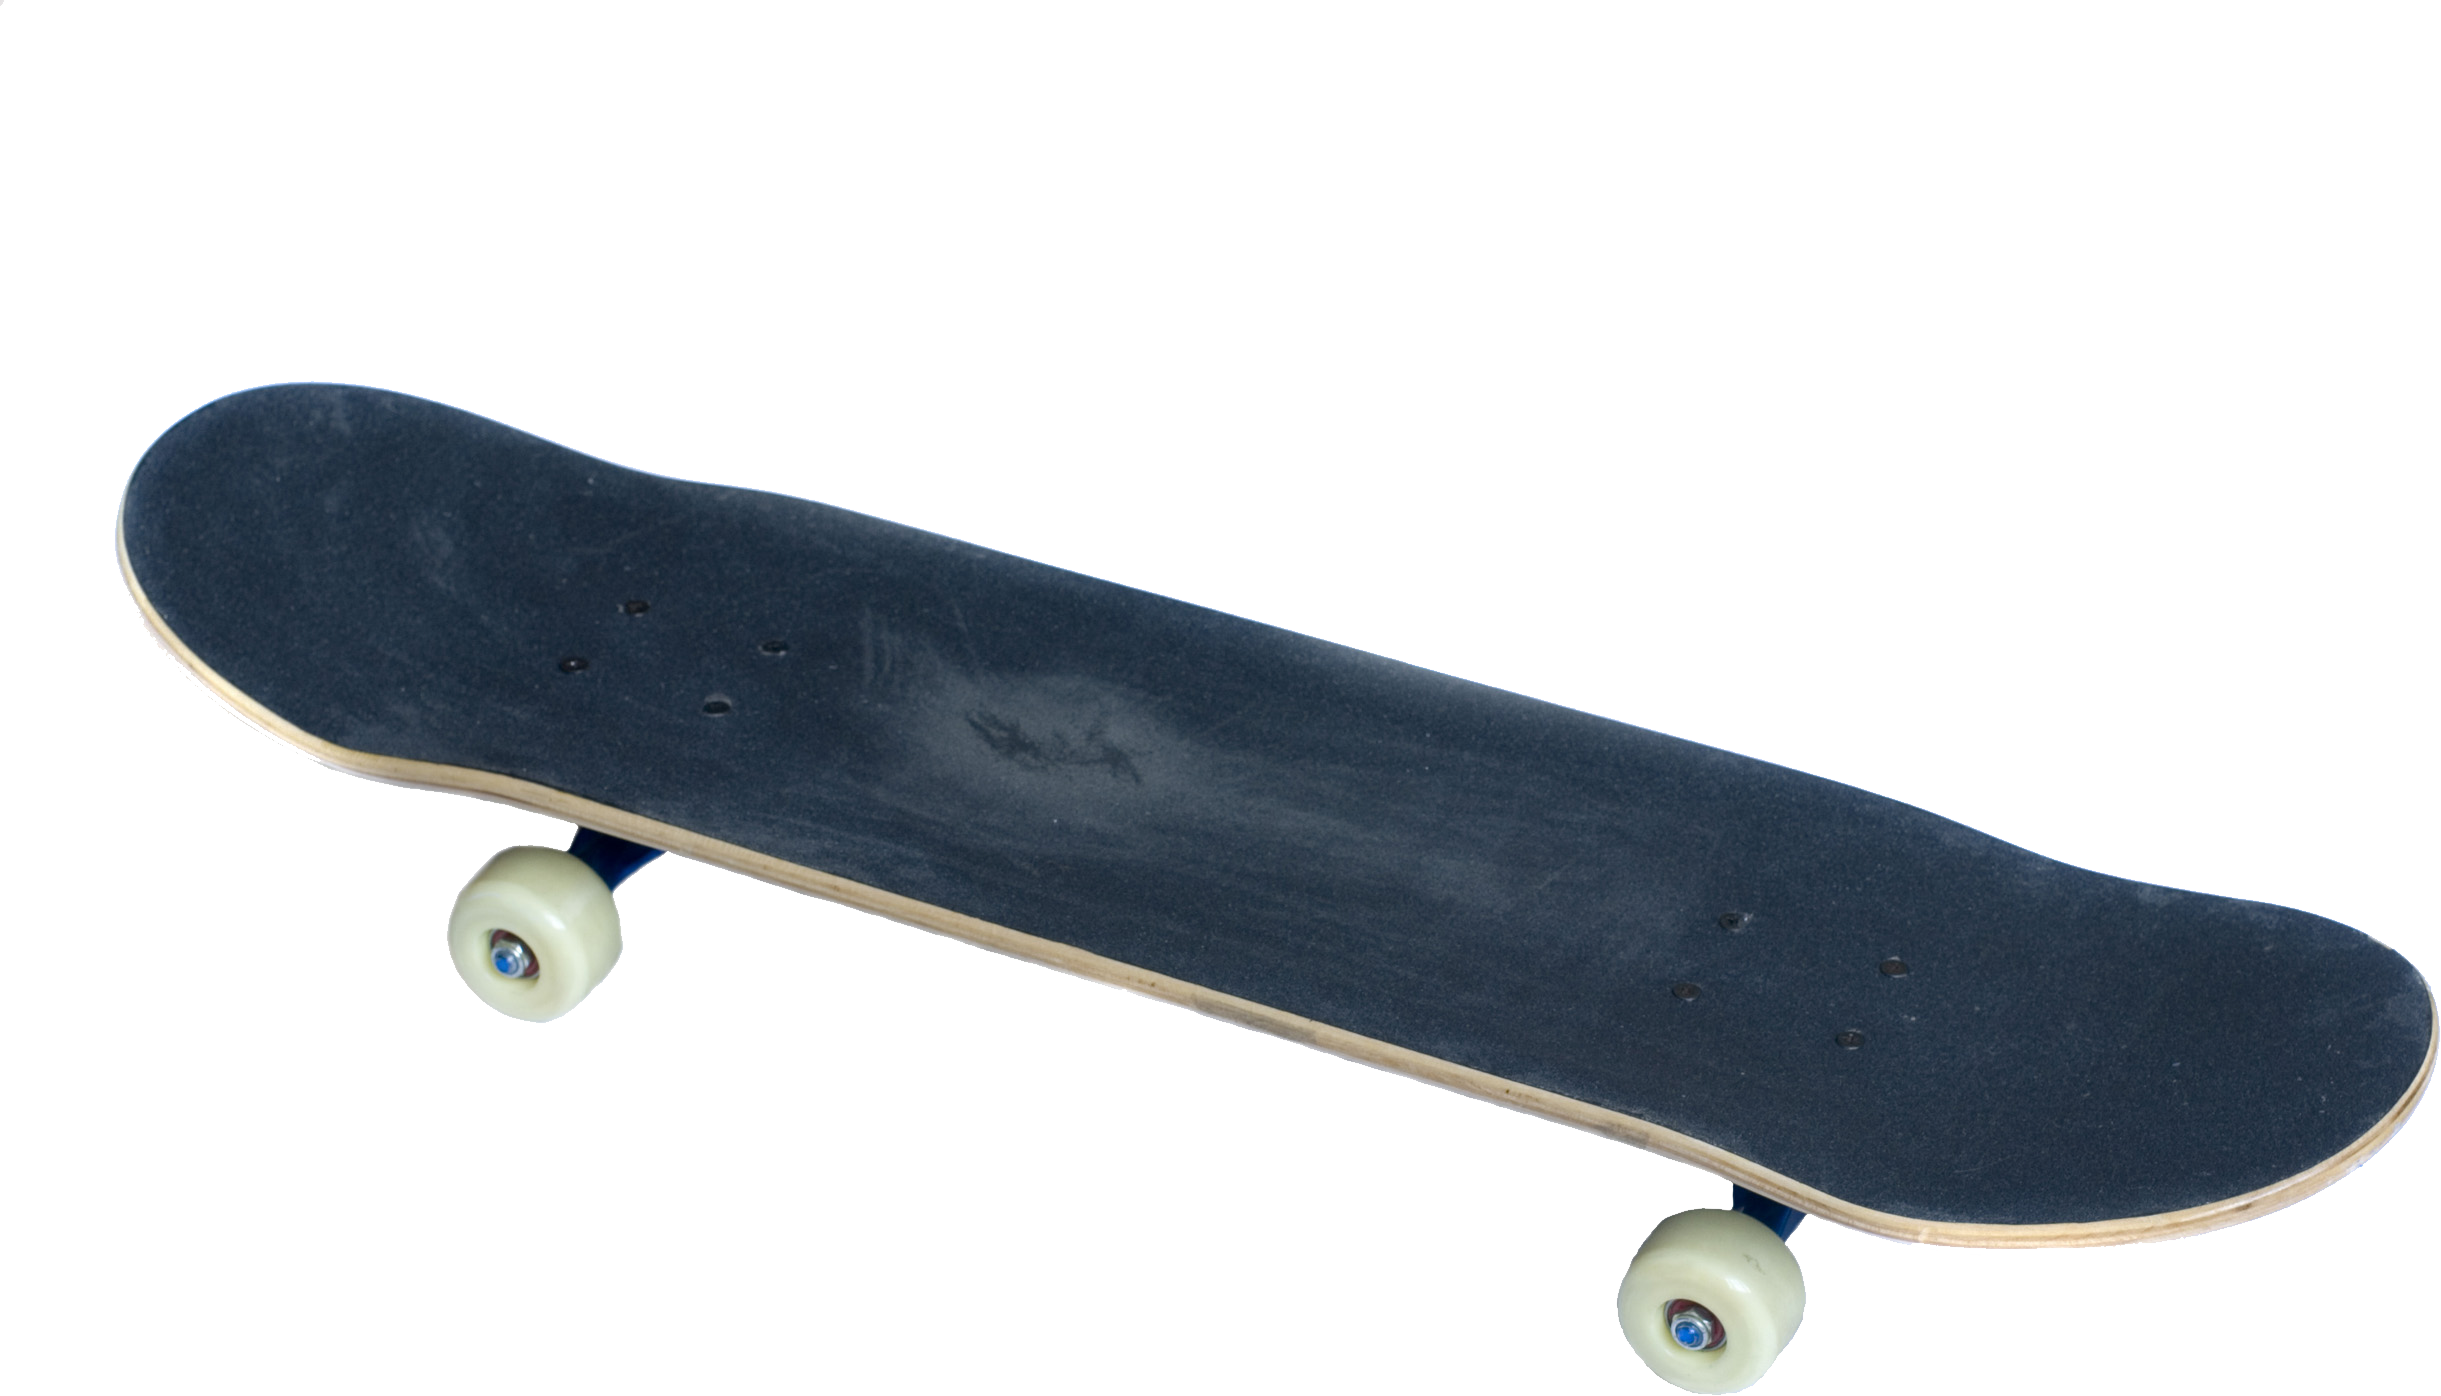 Skateboard PNG images Download 